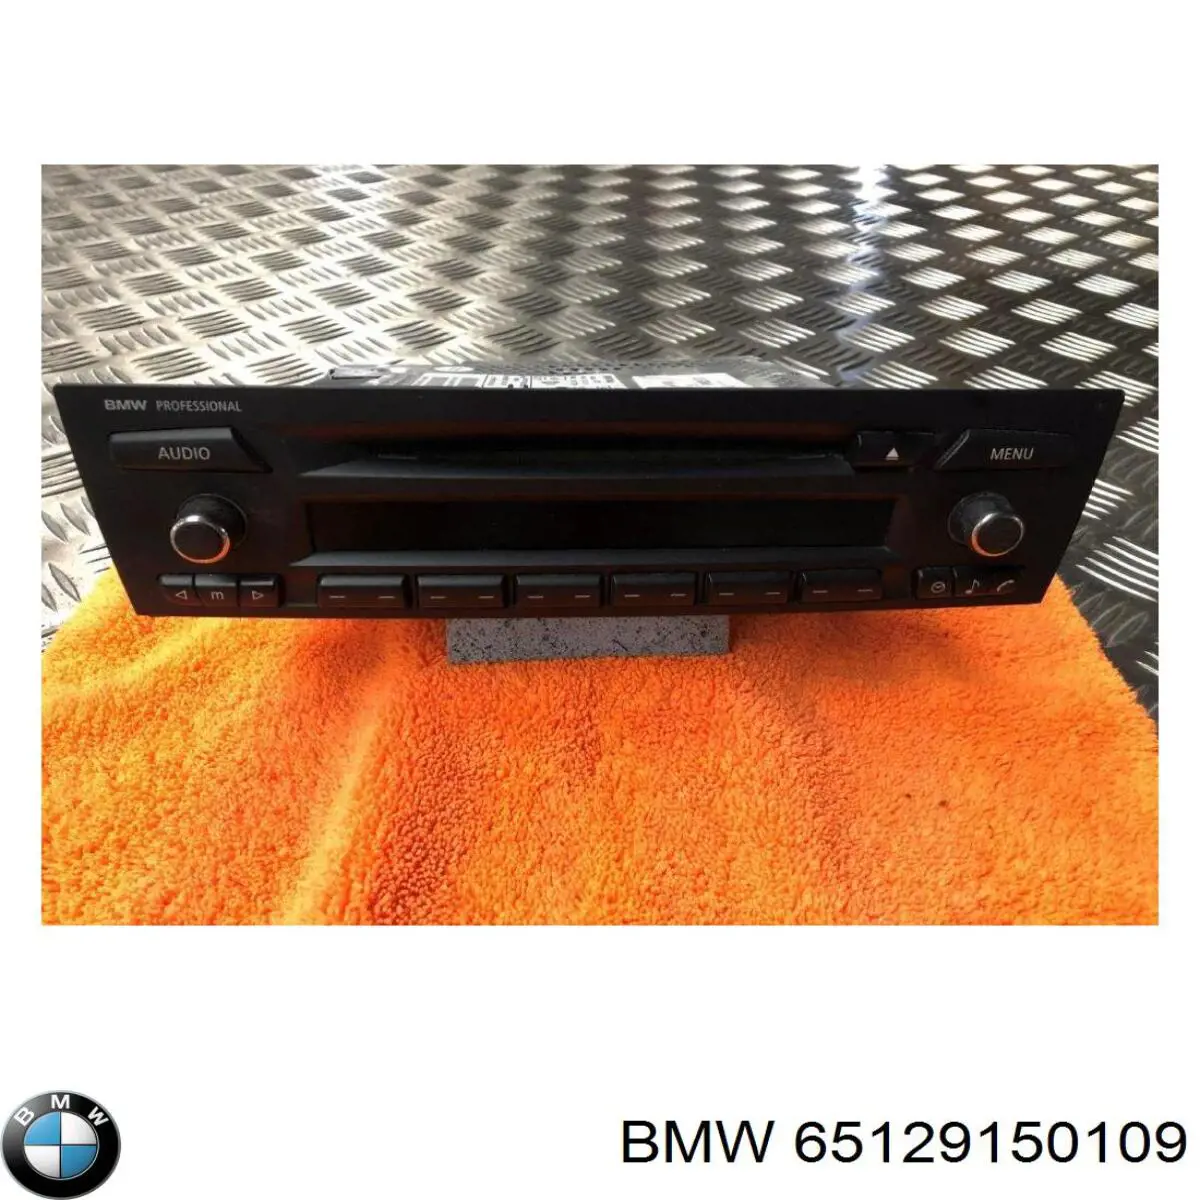 65126962570 BMW radio (radio am/fm)